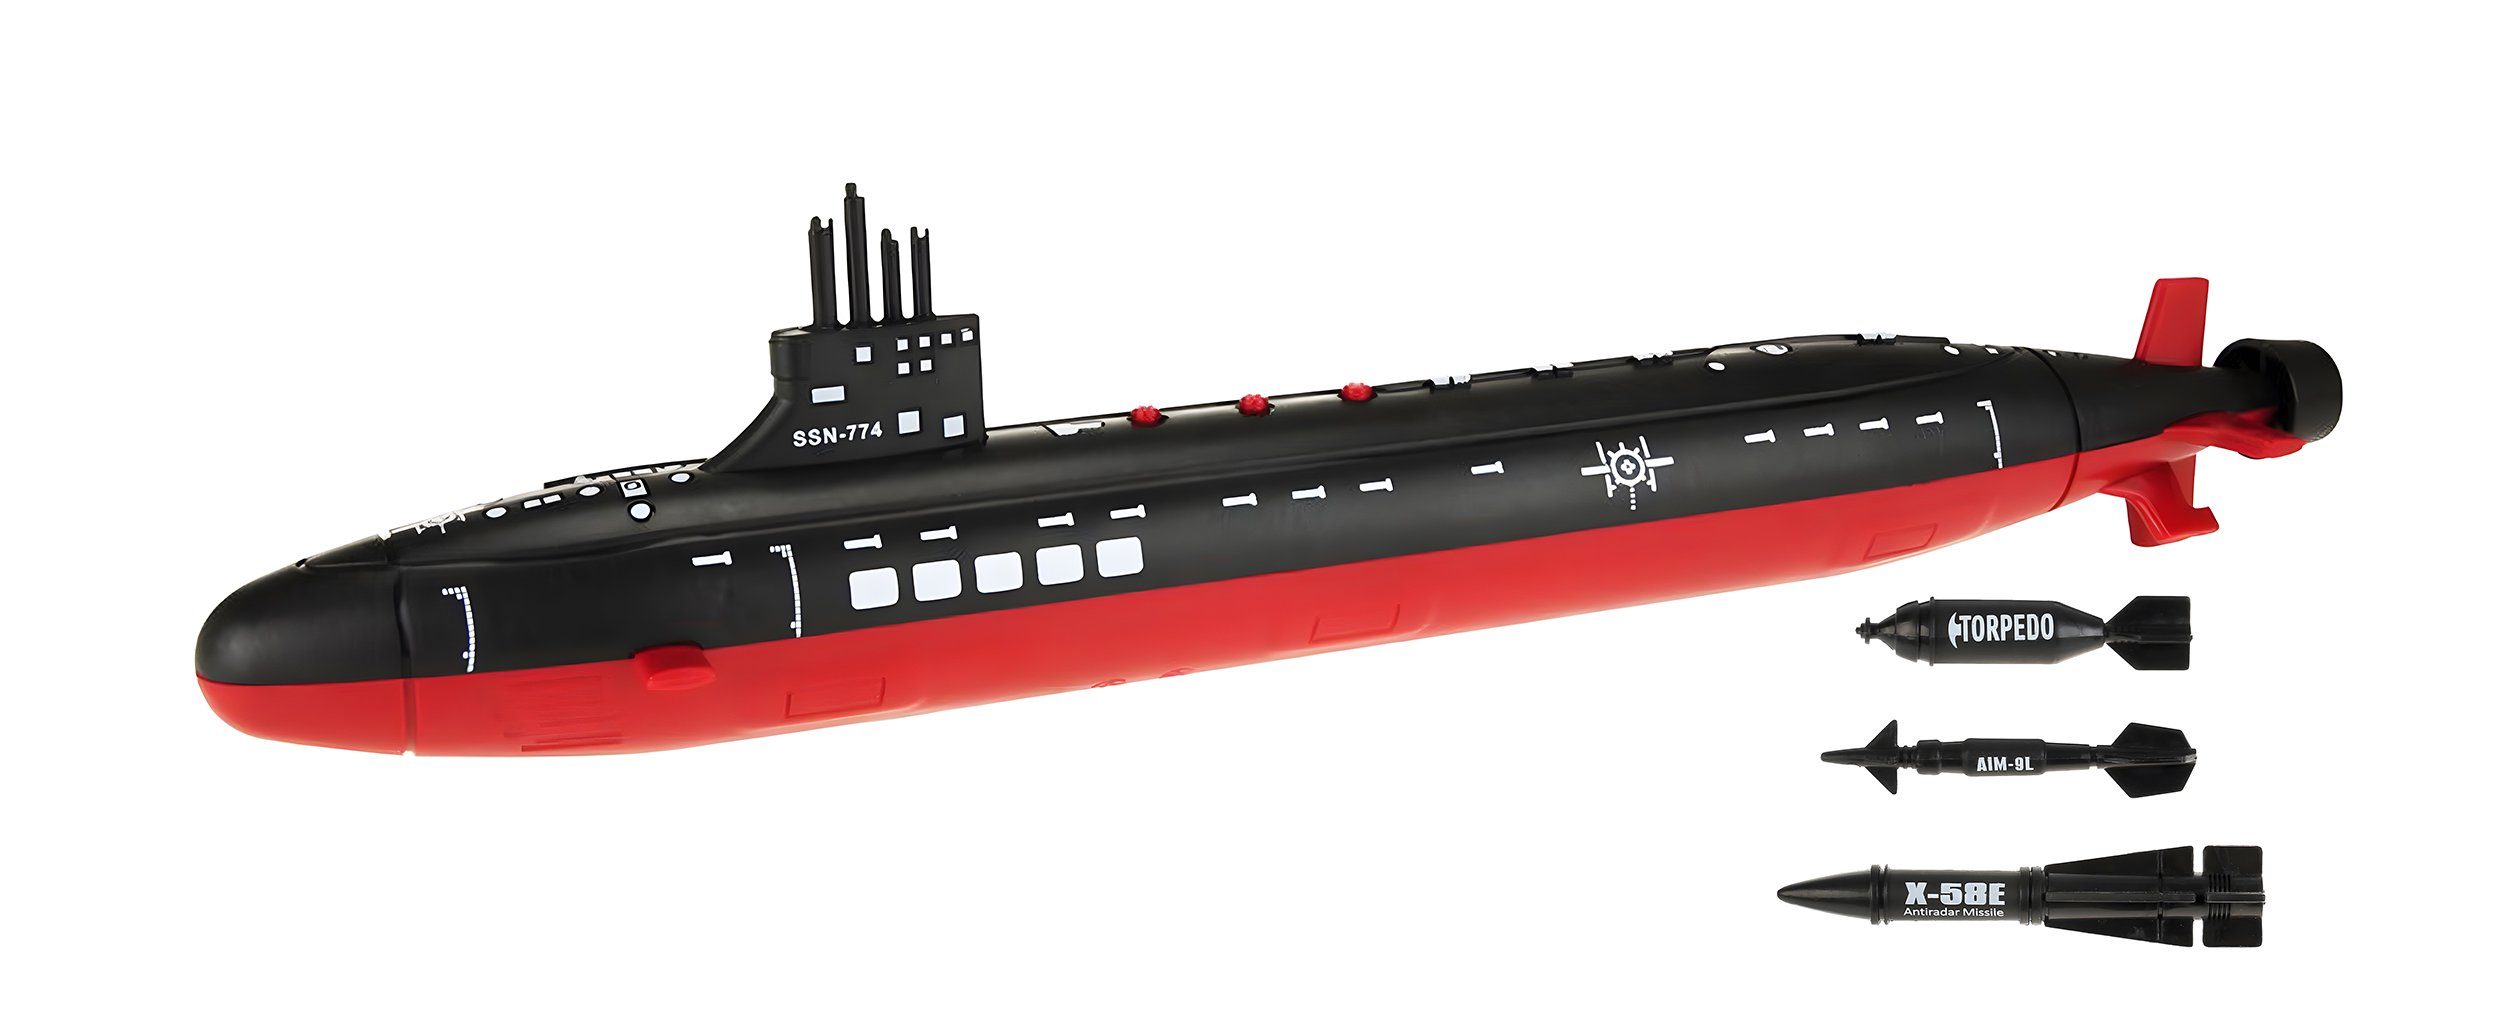 Toi-Toys Іграшки-Boot ARMY Marine U-BOOT mit Sound und Zubehör 42cm lang Militär 84, Submarine Іграшки Kinder Geschenk